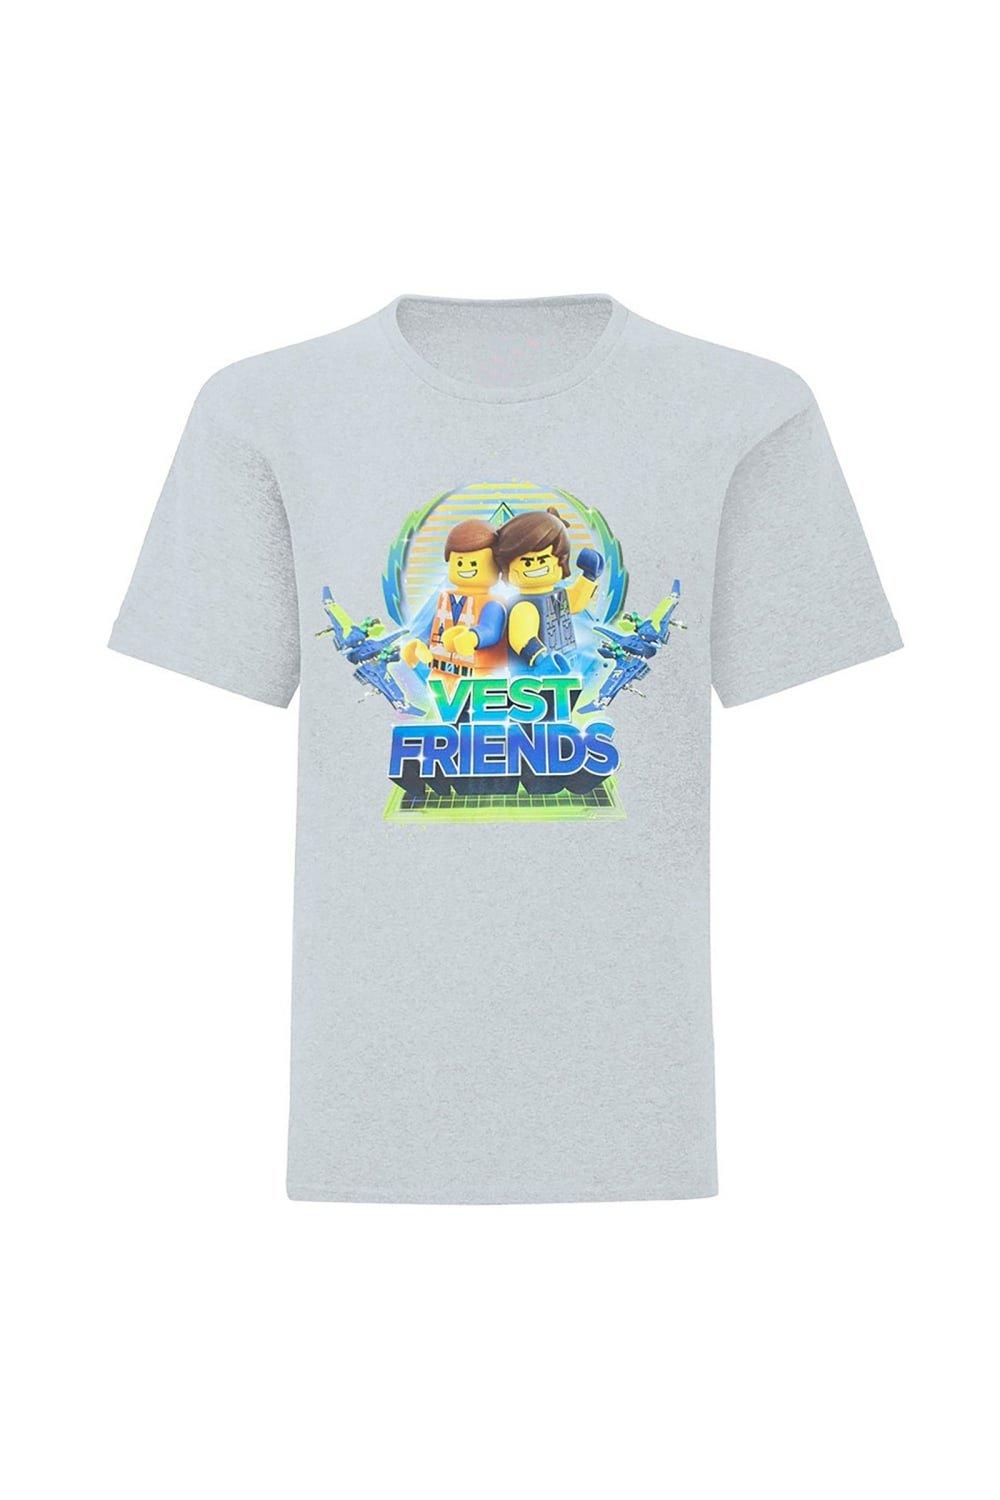 Movie 2 Emmet And Rex Vest Friends T-Shirt